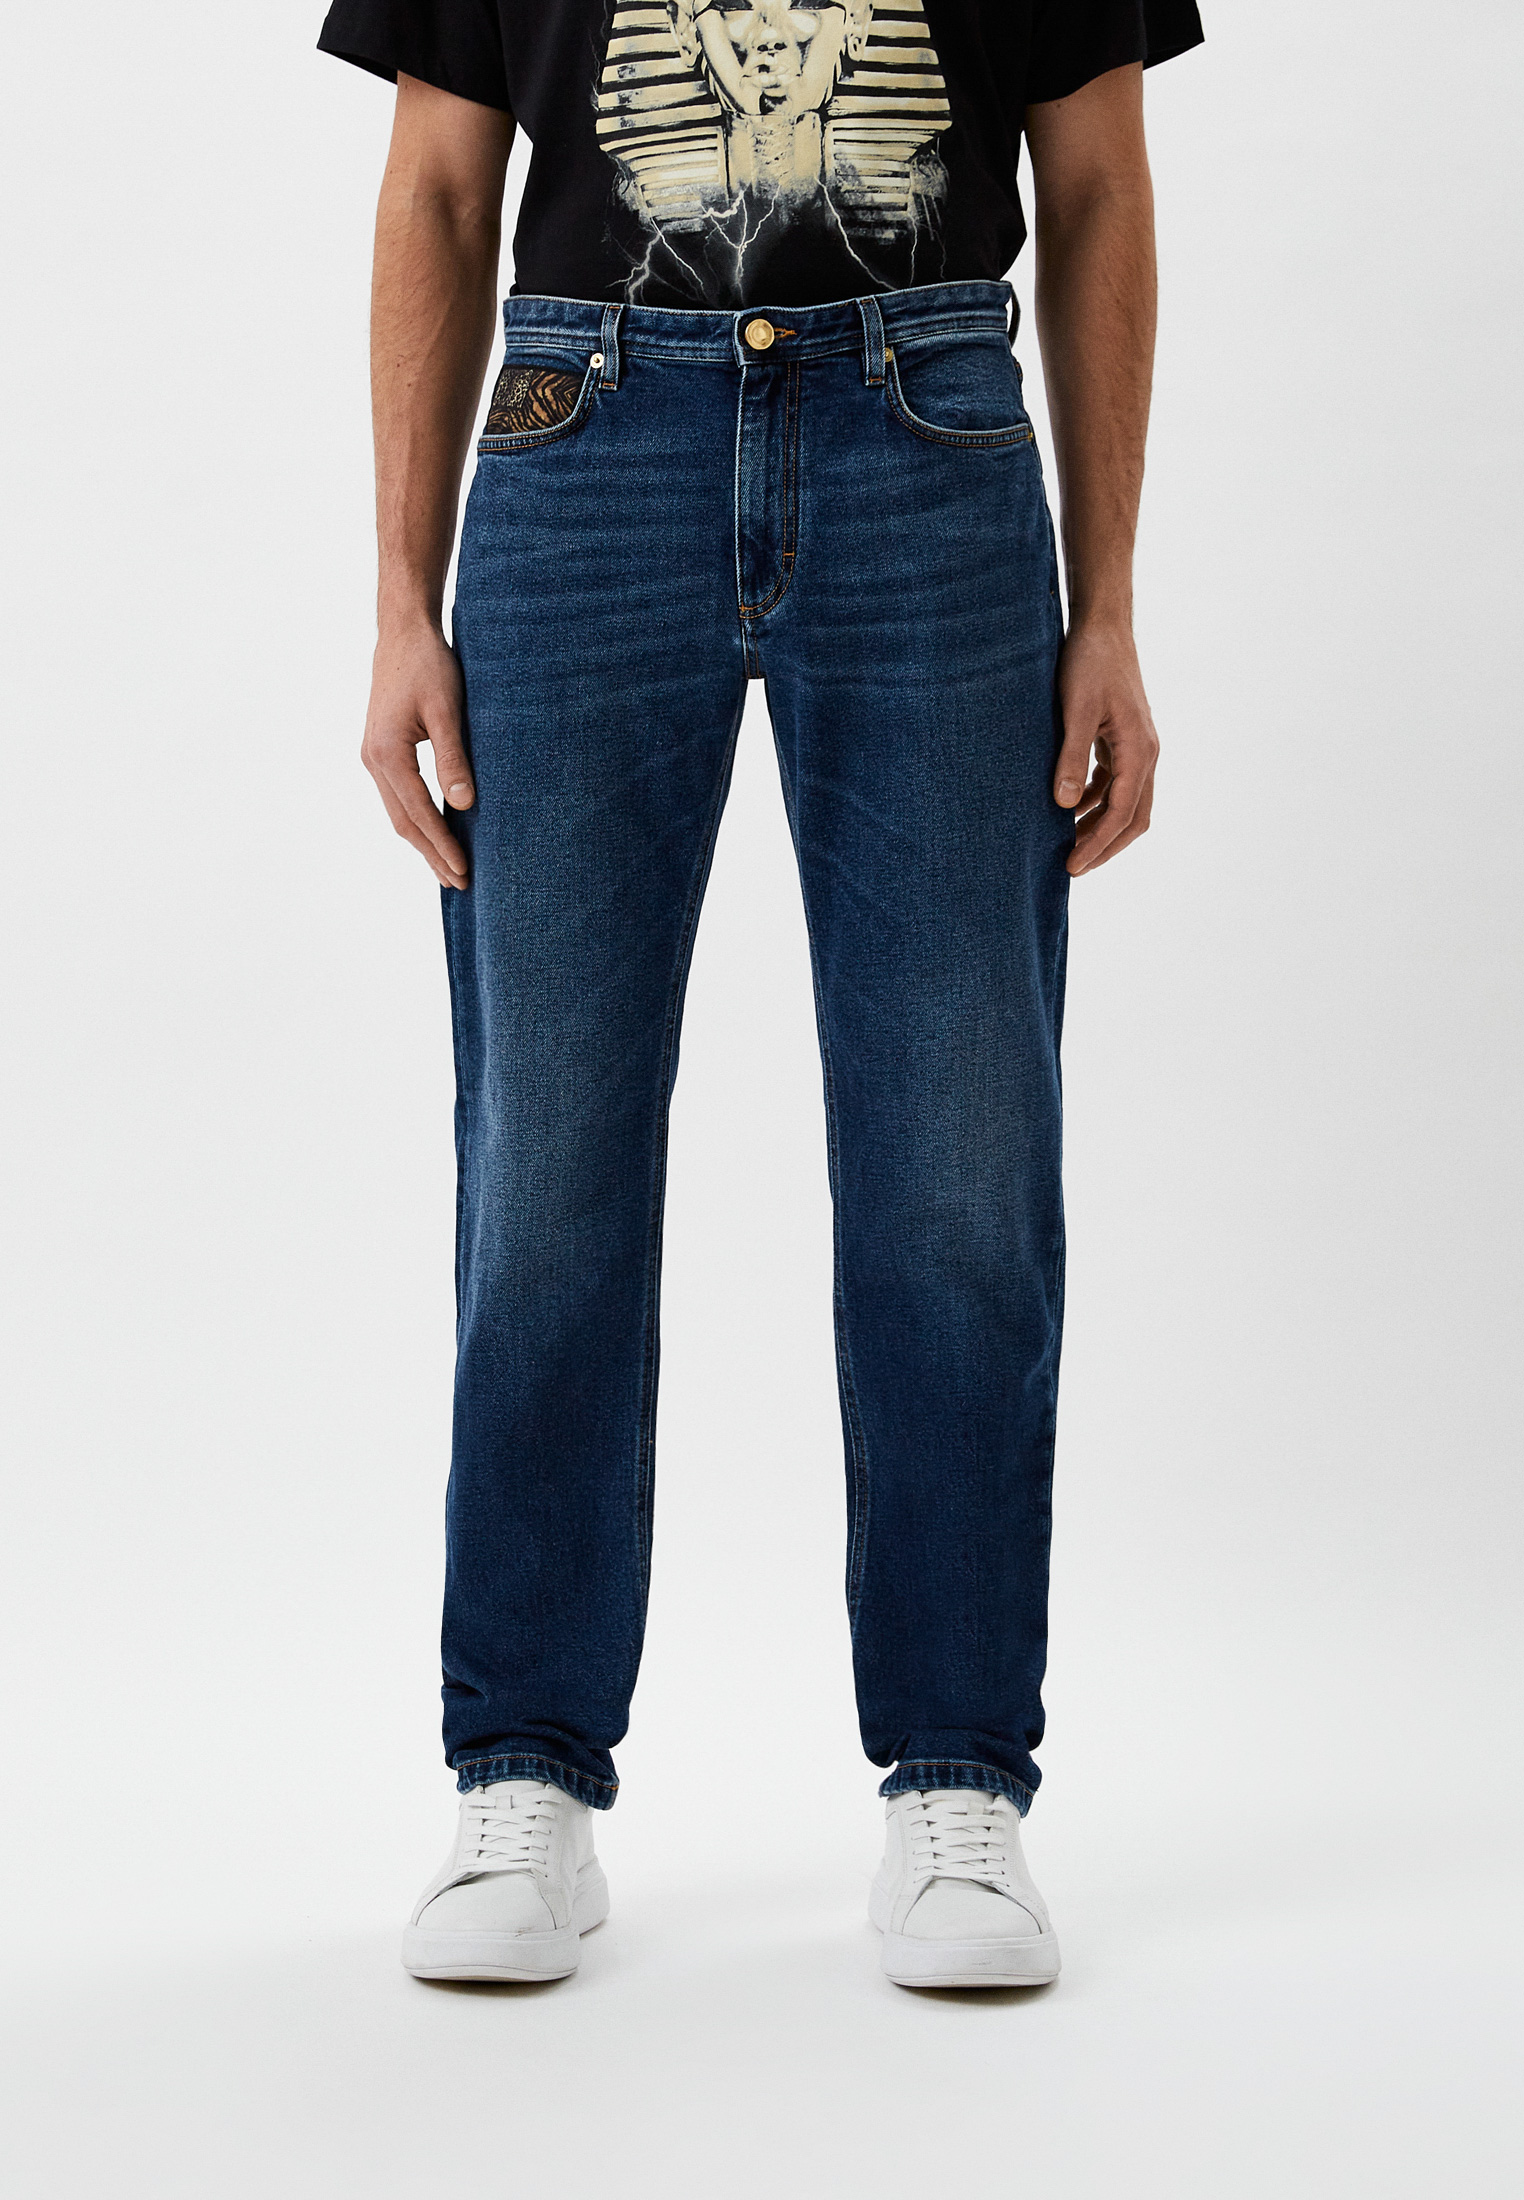 Мужские зауженные джинсы Roberto Cavalli (Роберто Кавалли) NNJ240-DS001: изображение 1